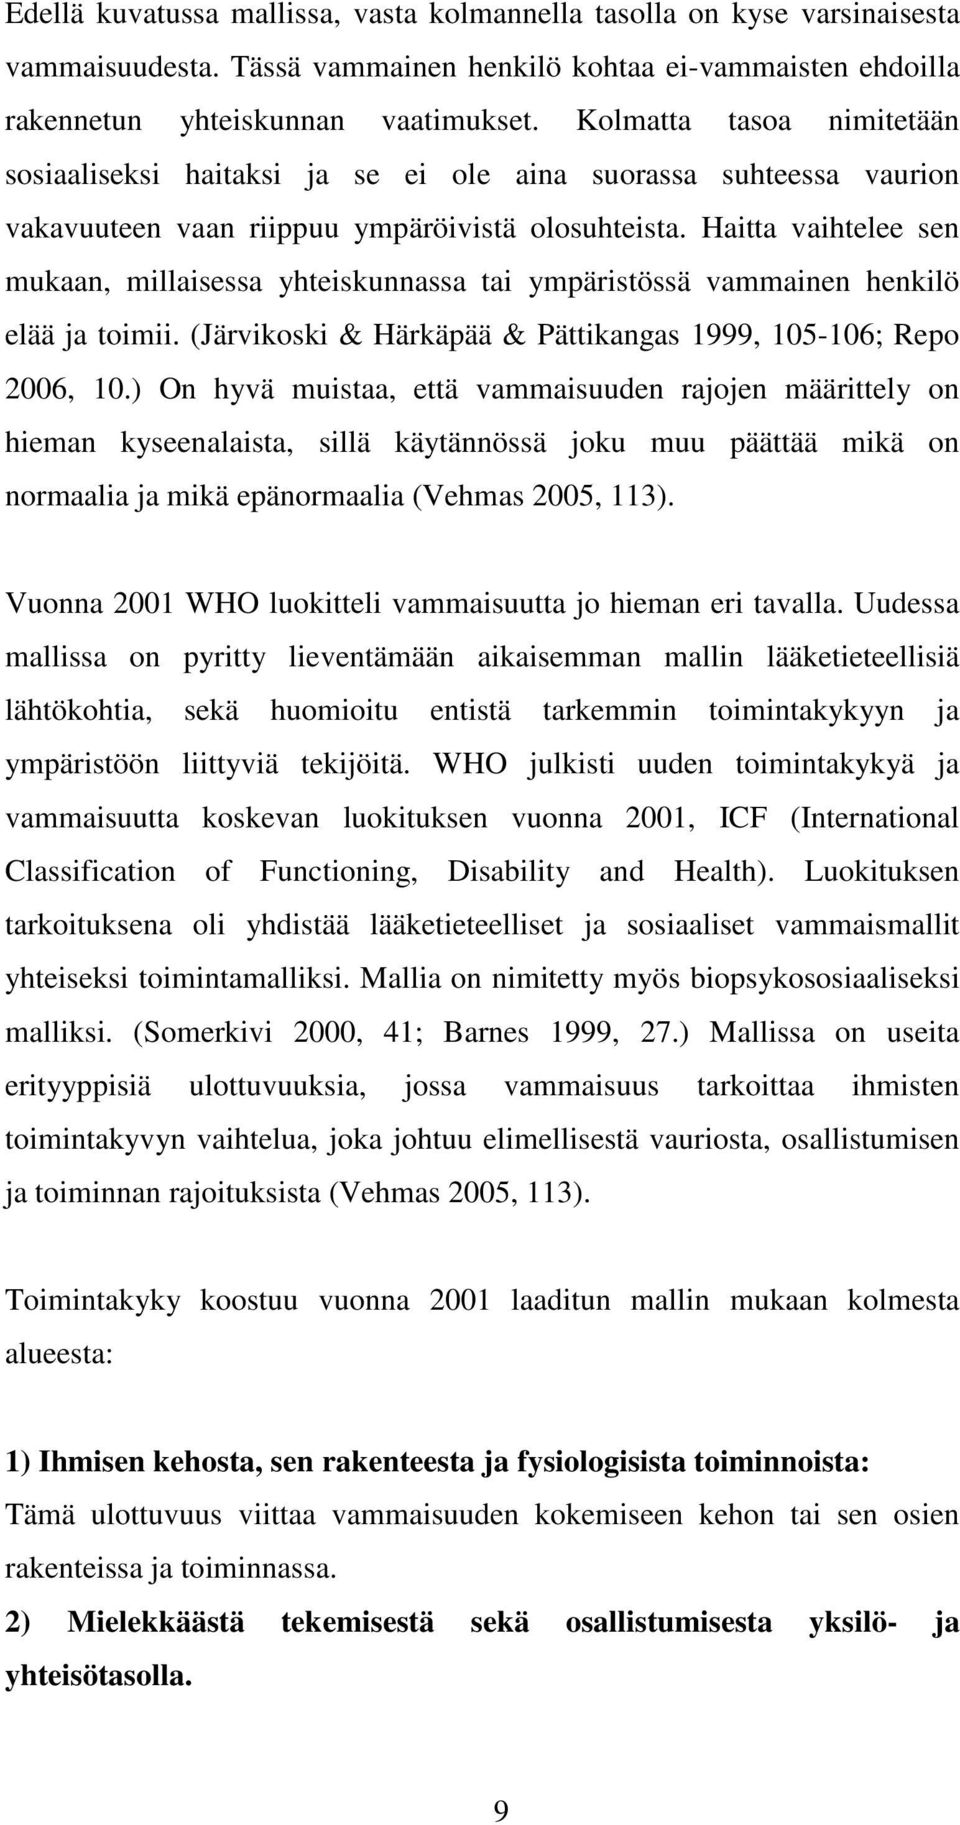 Haitta vaihtelee sen mukaan, millaisessa yhteiskunnassa tai ympäristössä vammainen henkilö elää ja toimii. (Järvikoski & Härkäpää & Pättikangas 1999, 105-106; Repo 2006, 10.